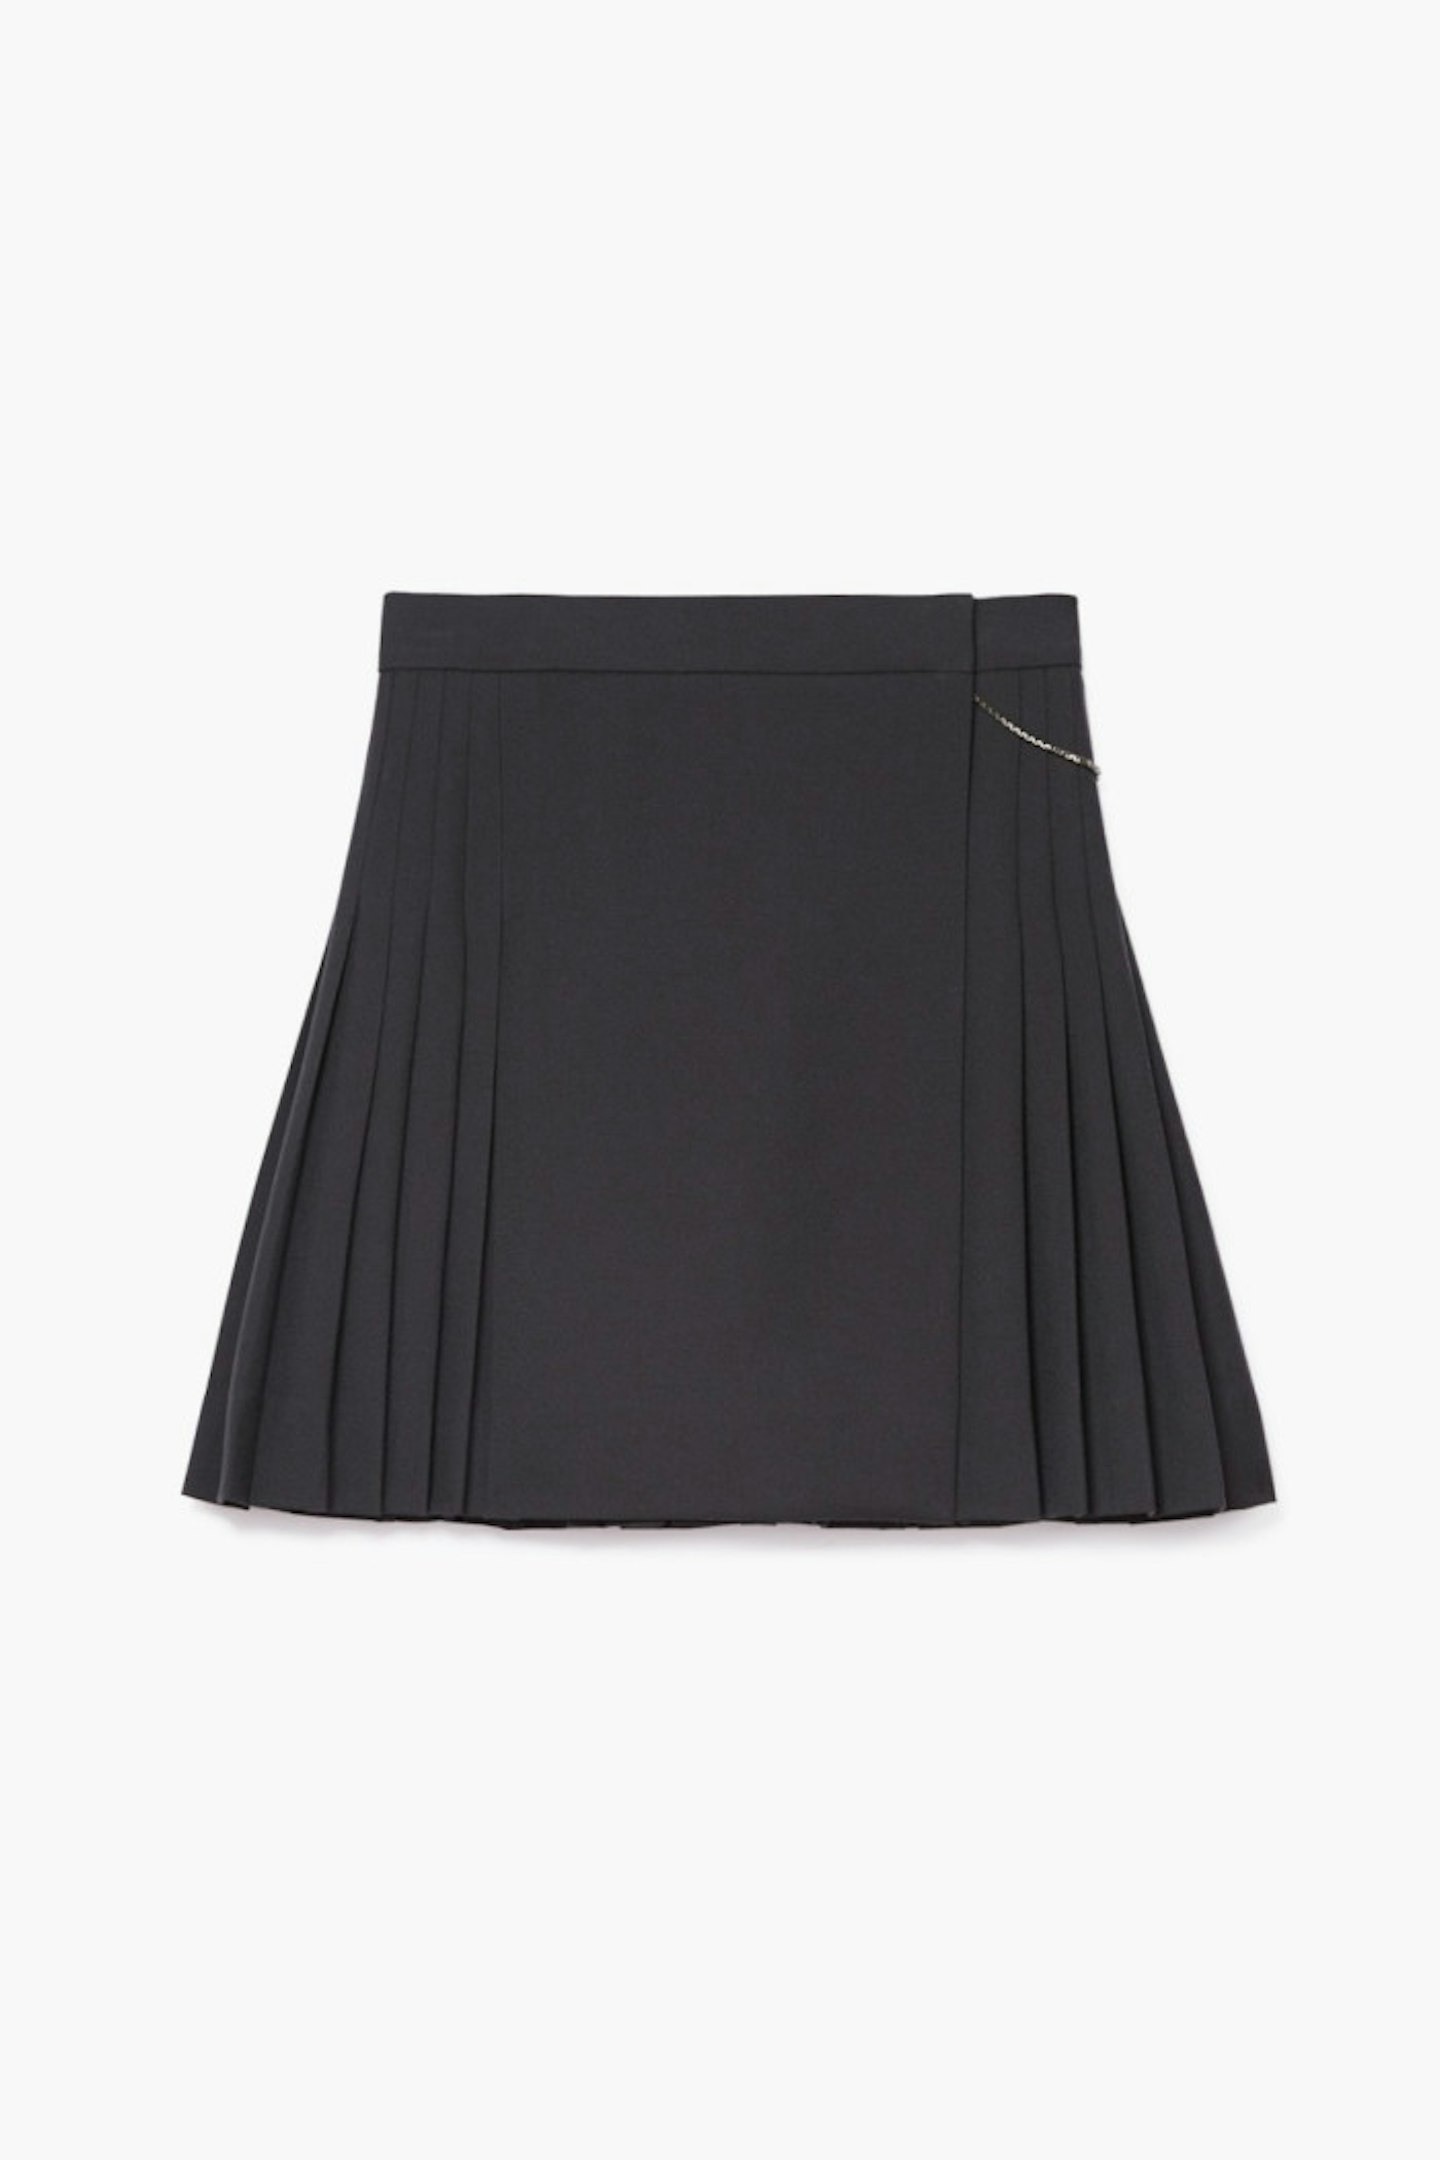 The Kooples Pleated Mini Skirt, £185.00